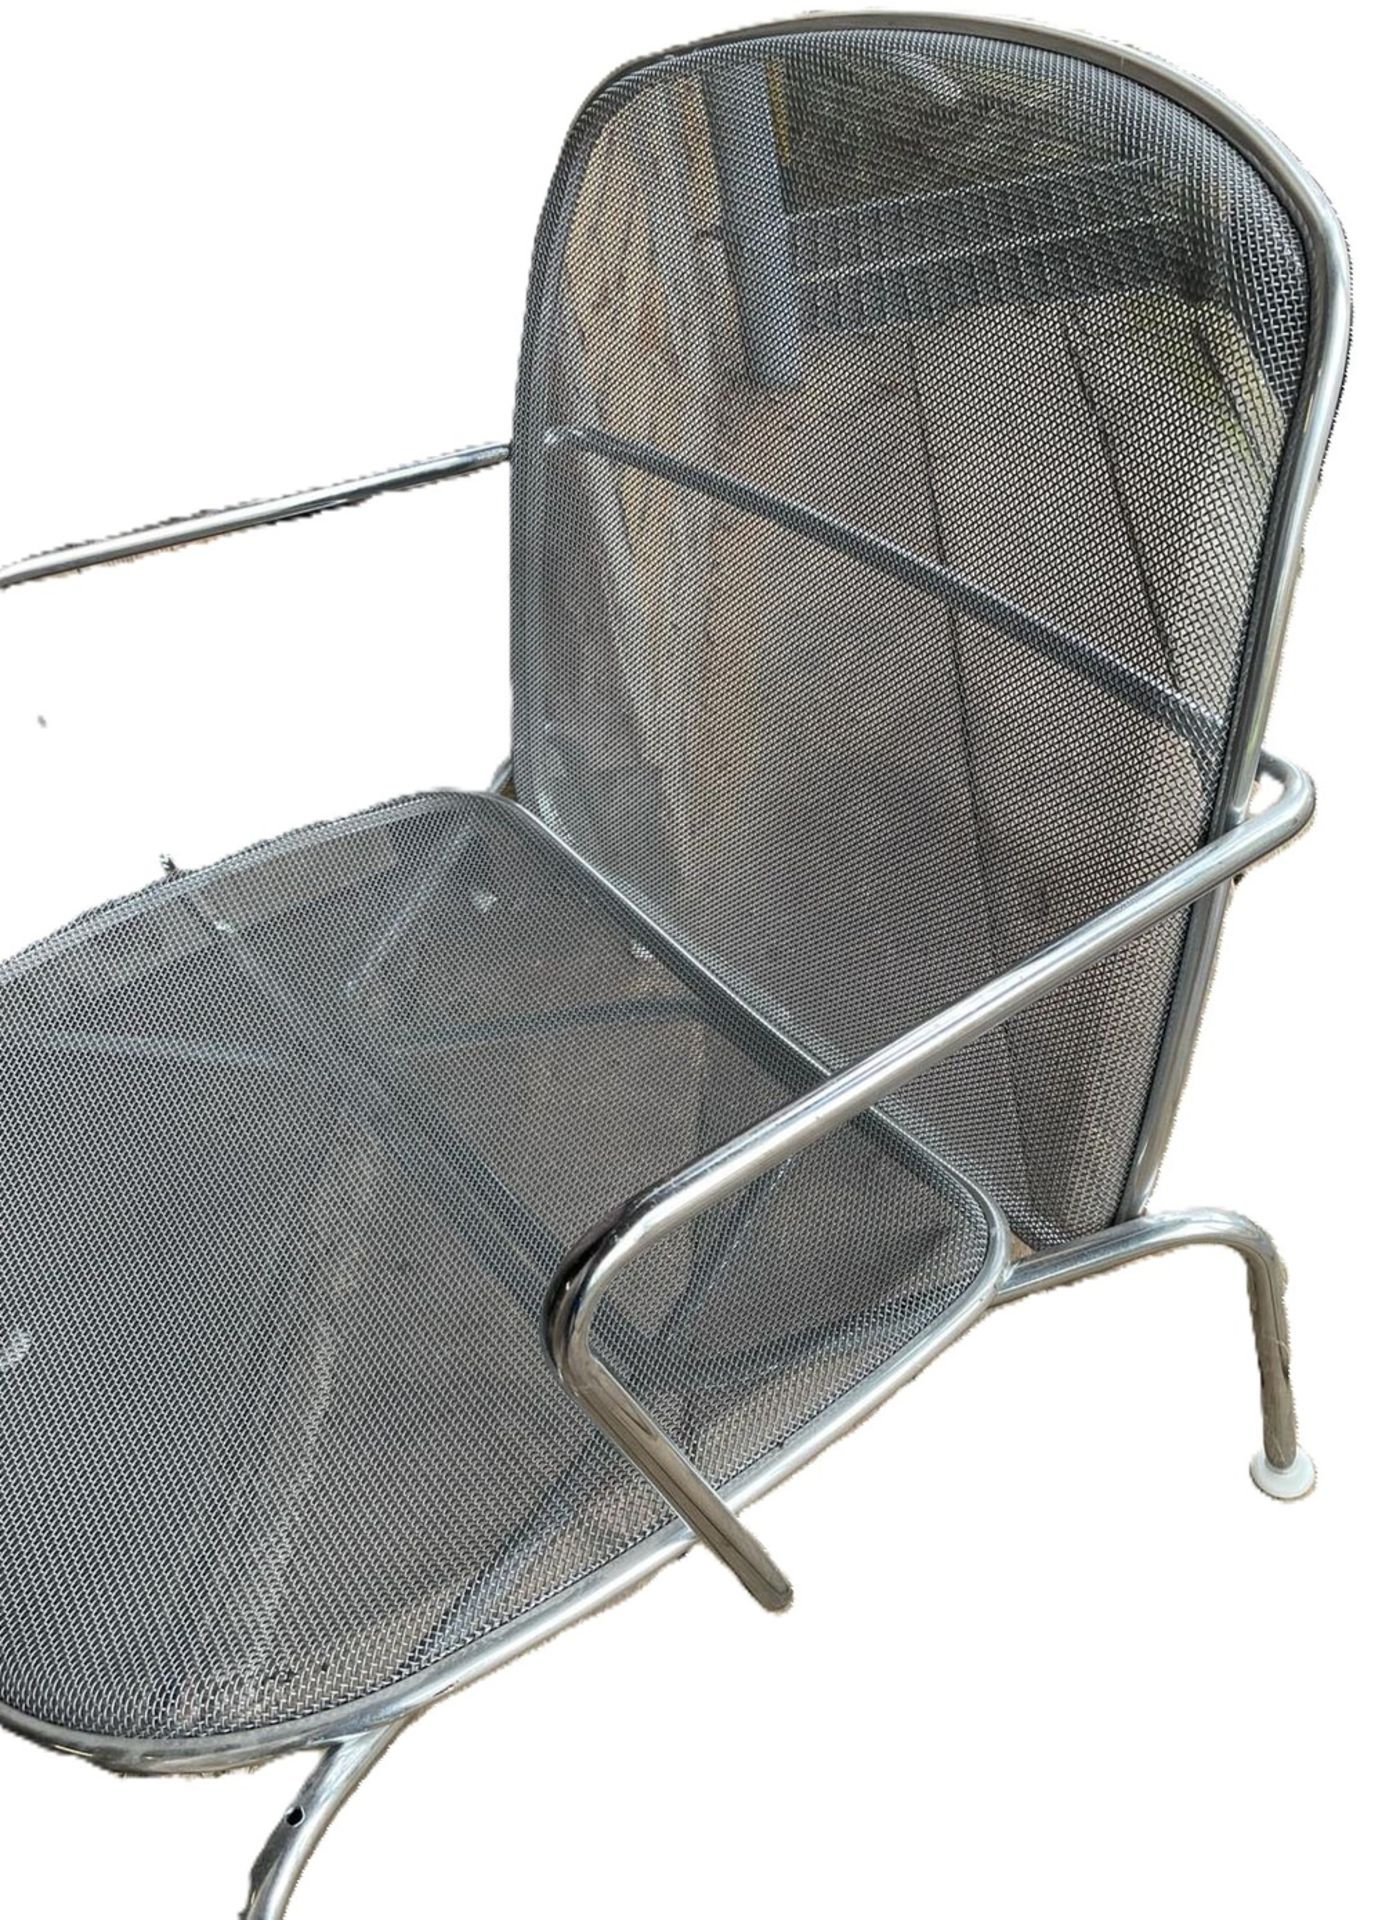 wohl Firma Knoll, Metall Longchair, Sitzfläche abnehmbar, Designklassiker aus den 80er Jahren. - Bild 2 aus 3